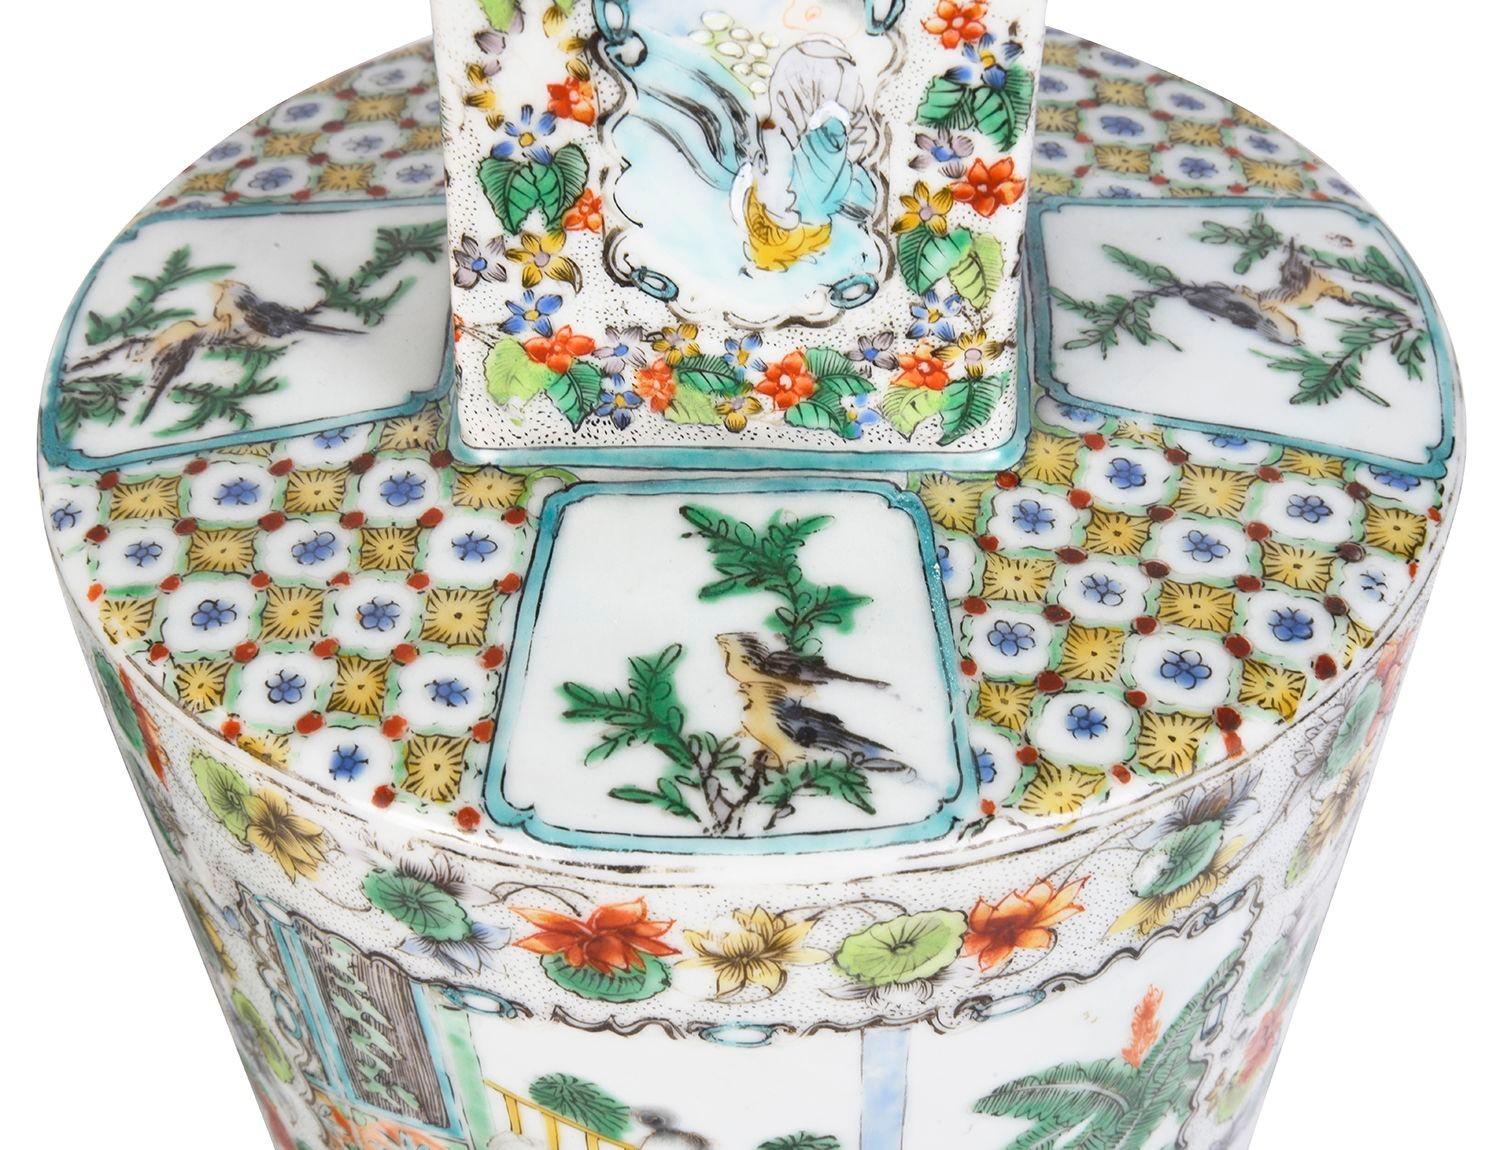 Ein sehr dekoratives und stilvolles Paar chinesischer Famille-Verte-Vasen aus dem späten 19. Jahrhundert mit handgemalten Tafeln, die klassische chinesische Interieurszenen inmitten von Blumen- und Blätterbordüren darstellen.

Bei Bedarf können wir